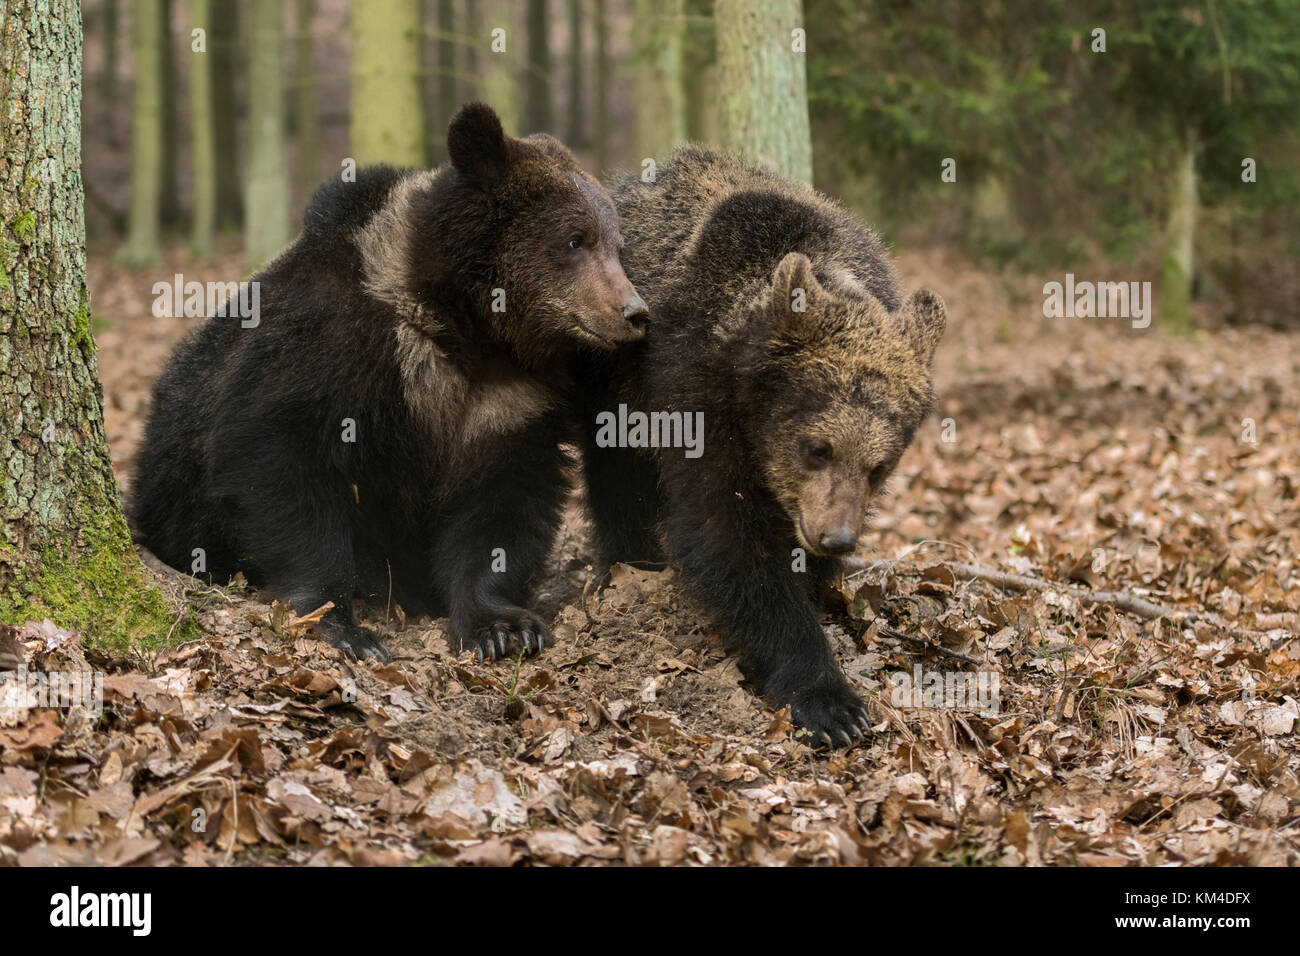 Ours bruns / Braunbaeren ( Ursus arctos ), deux frères et sœurs, jeunes, adolescents, jouant ensemble dans une forêt de dicotylédones automnale, Europe. Banque D'Images